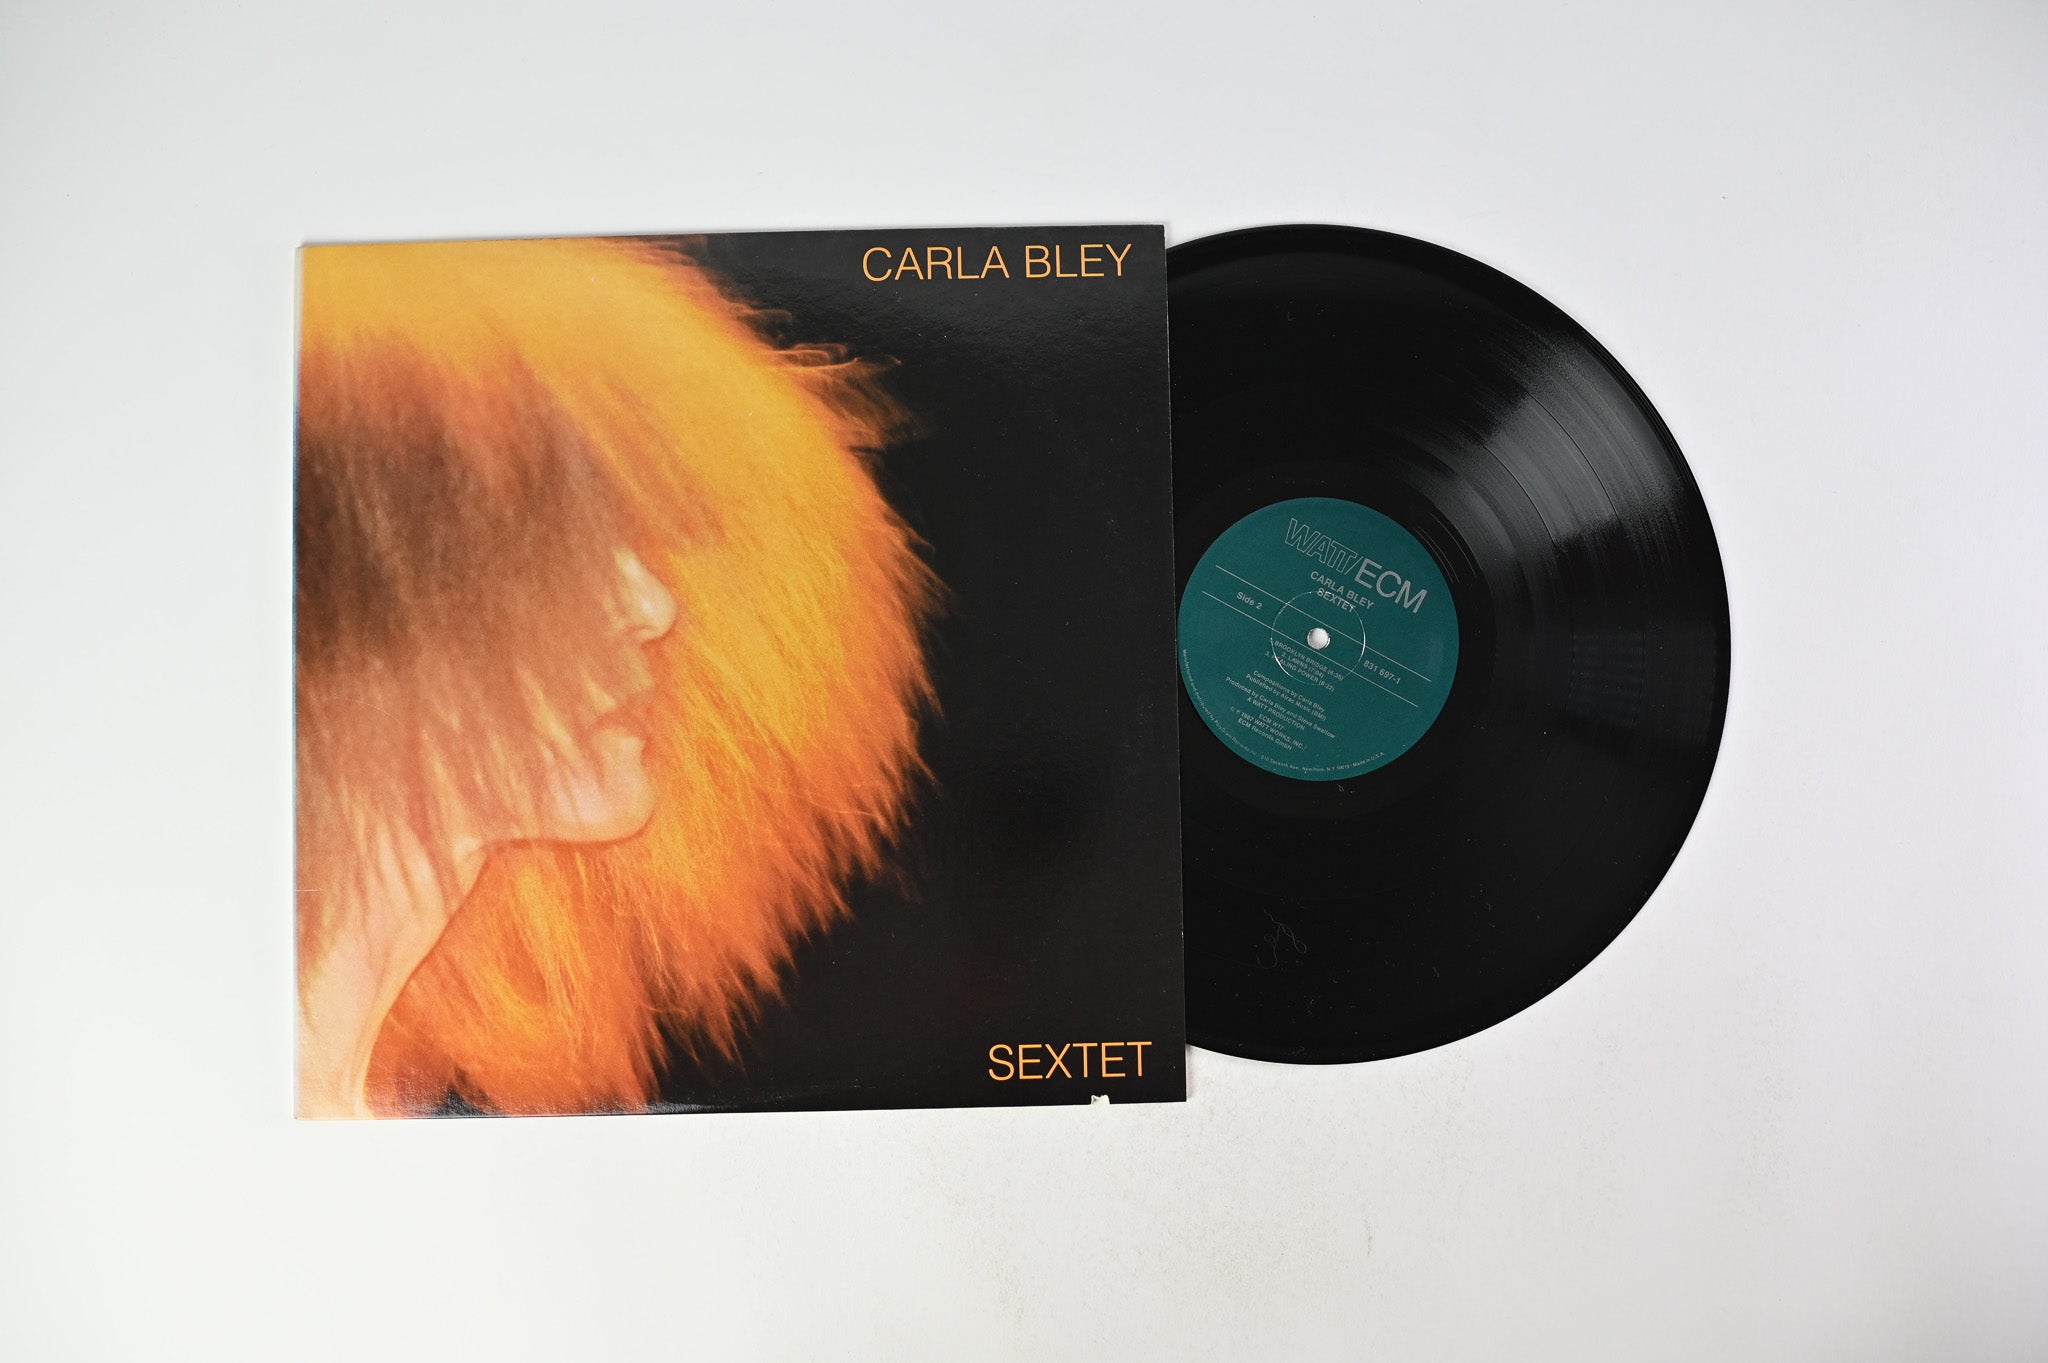 Carla Bley - Sextet on WATT/ECM Records